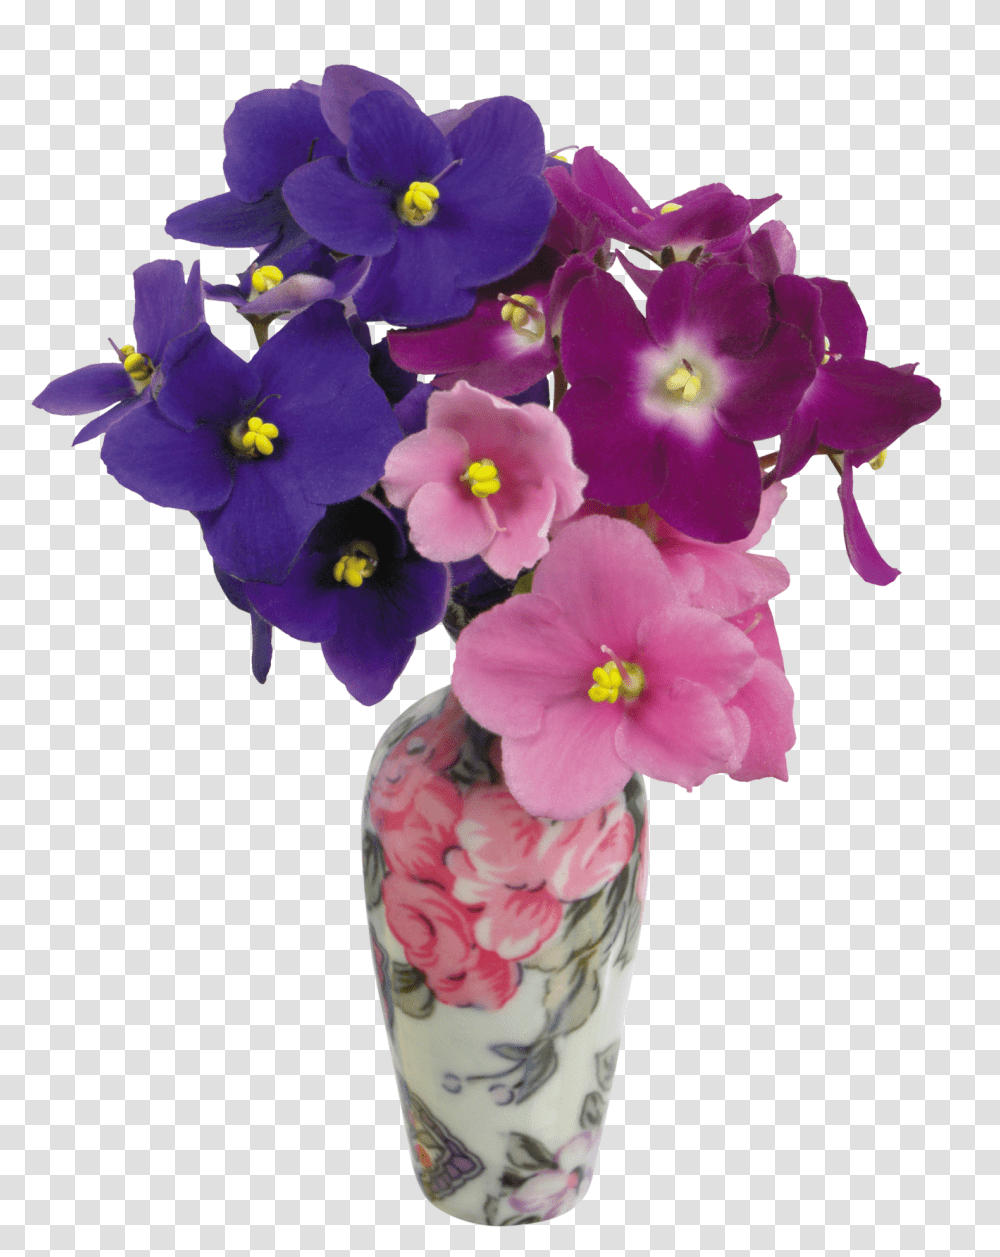 Download Vase Image For Free Flower Color Violet In A Vase, Plant, Geranium, Blossom, Flower Arrangement Transparent Png